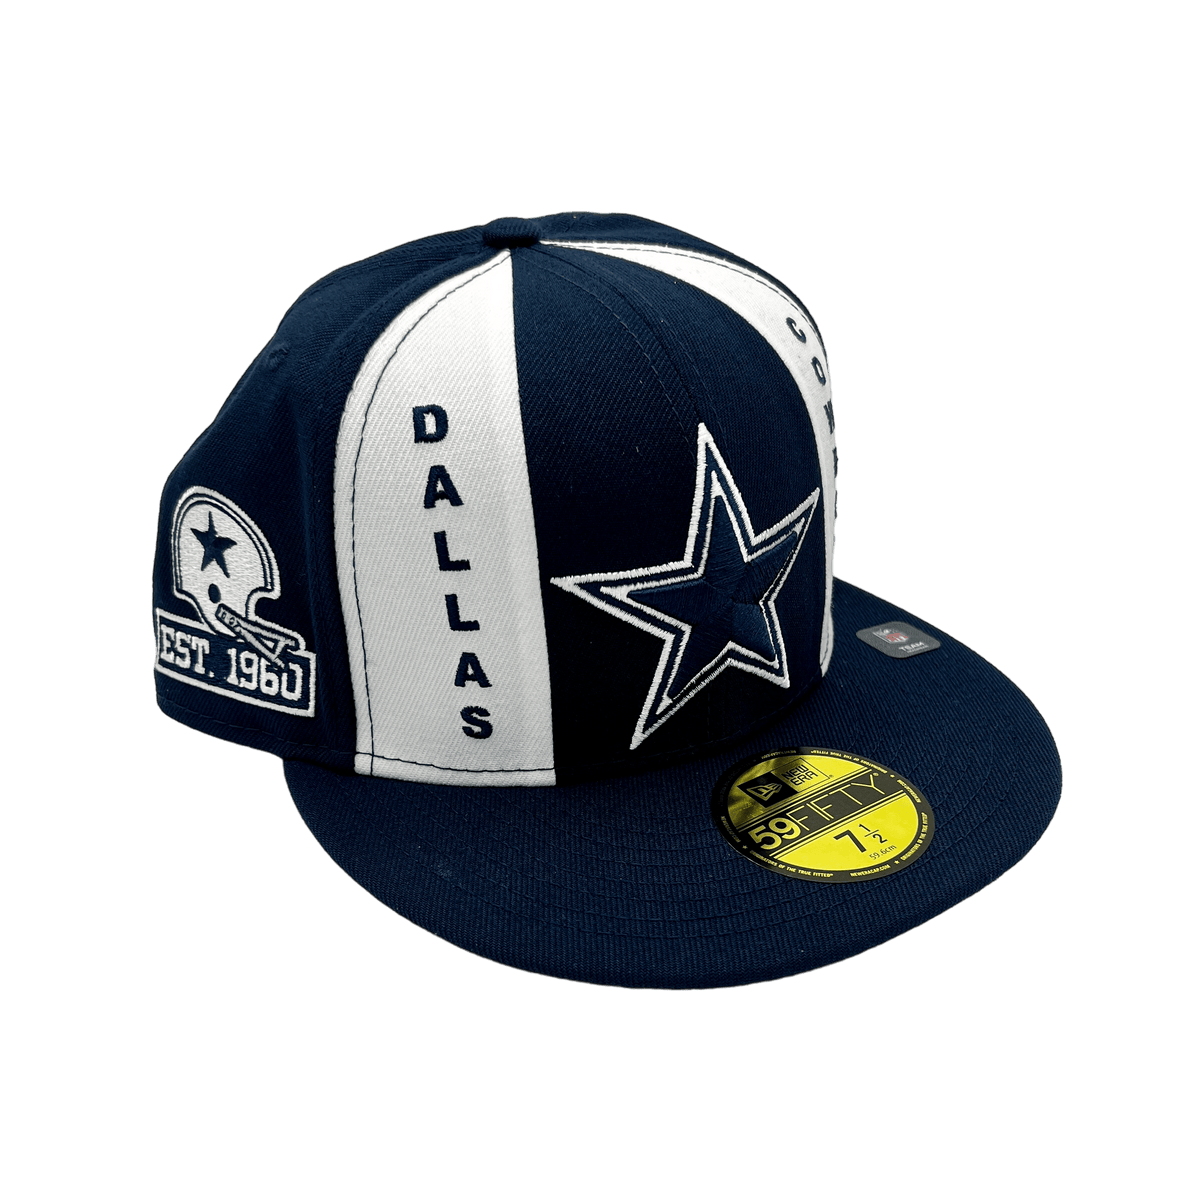 Dallas Cowboys jersey custom black color - Dallas Cowboys Home